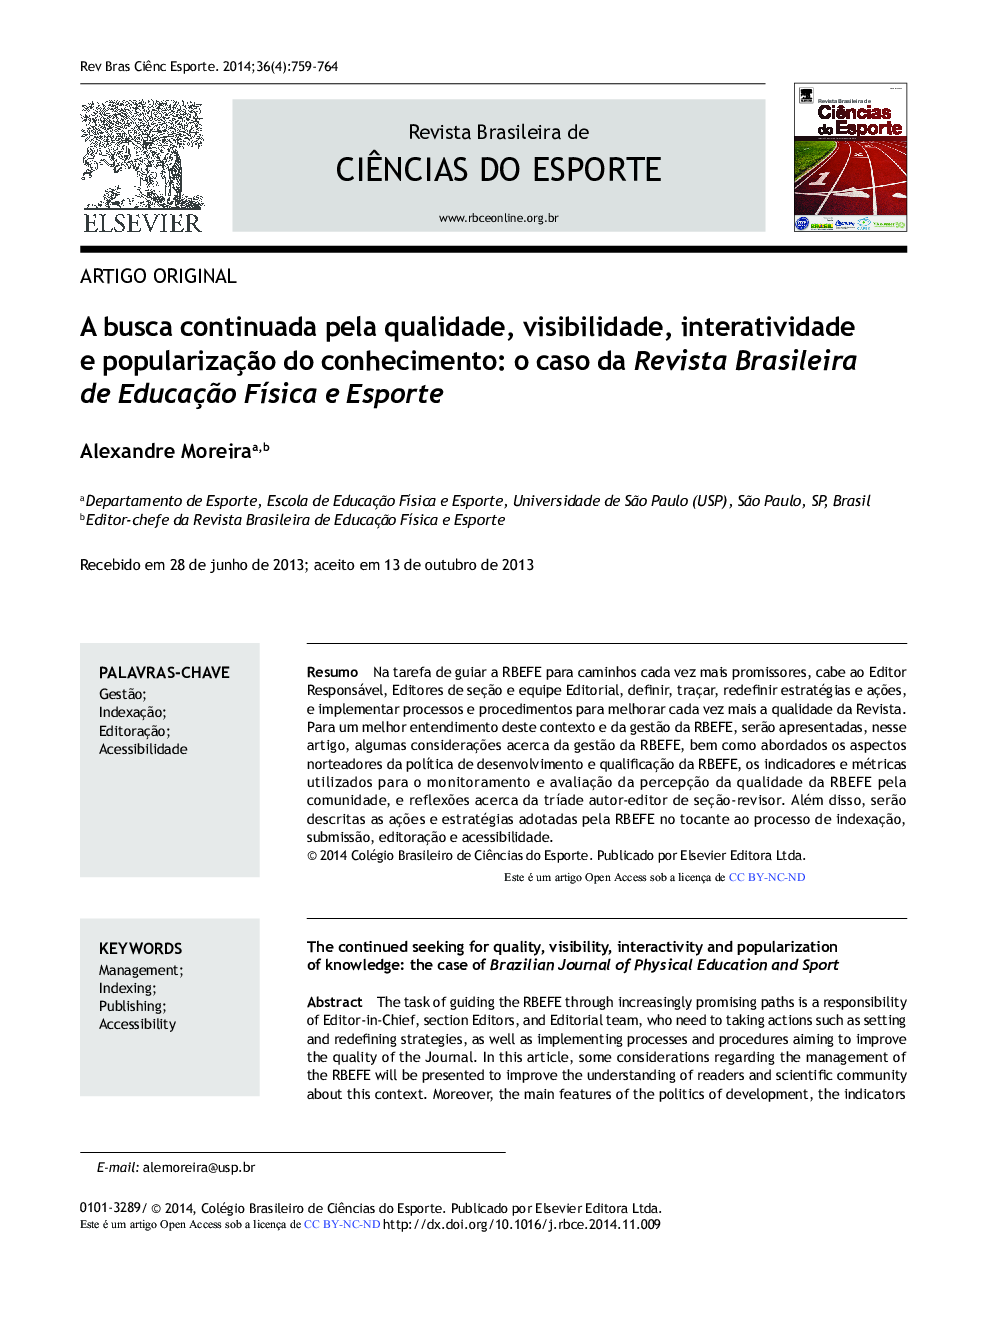 A busca continuada pela qualidade, visibilidade, interatividade e popularização do conhecimento: o caso da Revista Brasileira de Educação Física e Esporte